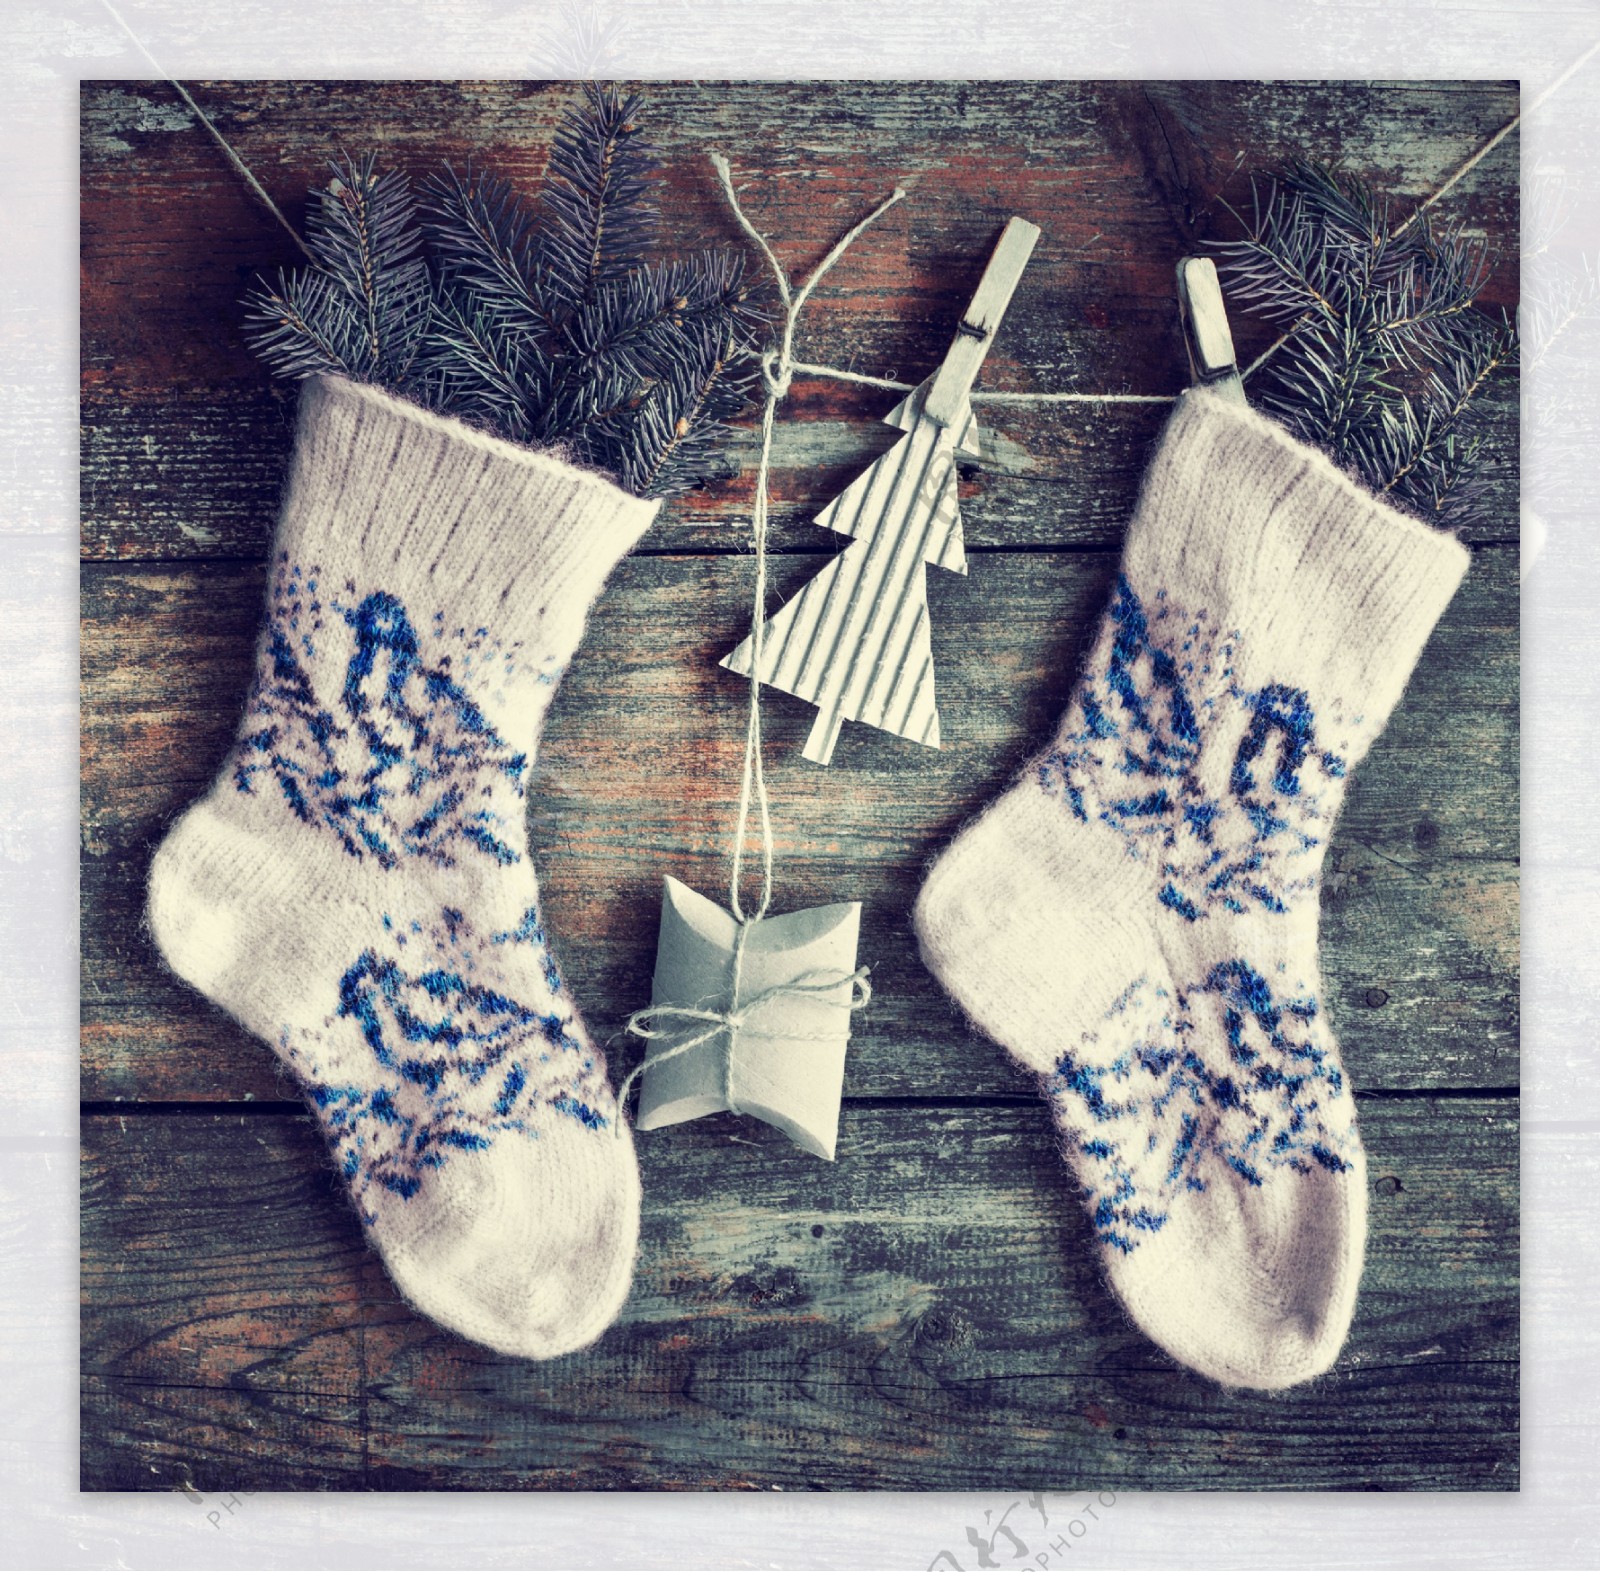 绳子上的袜子与圣诞节吊饰图片